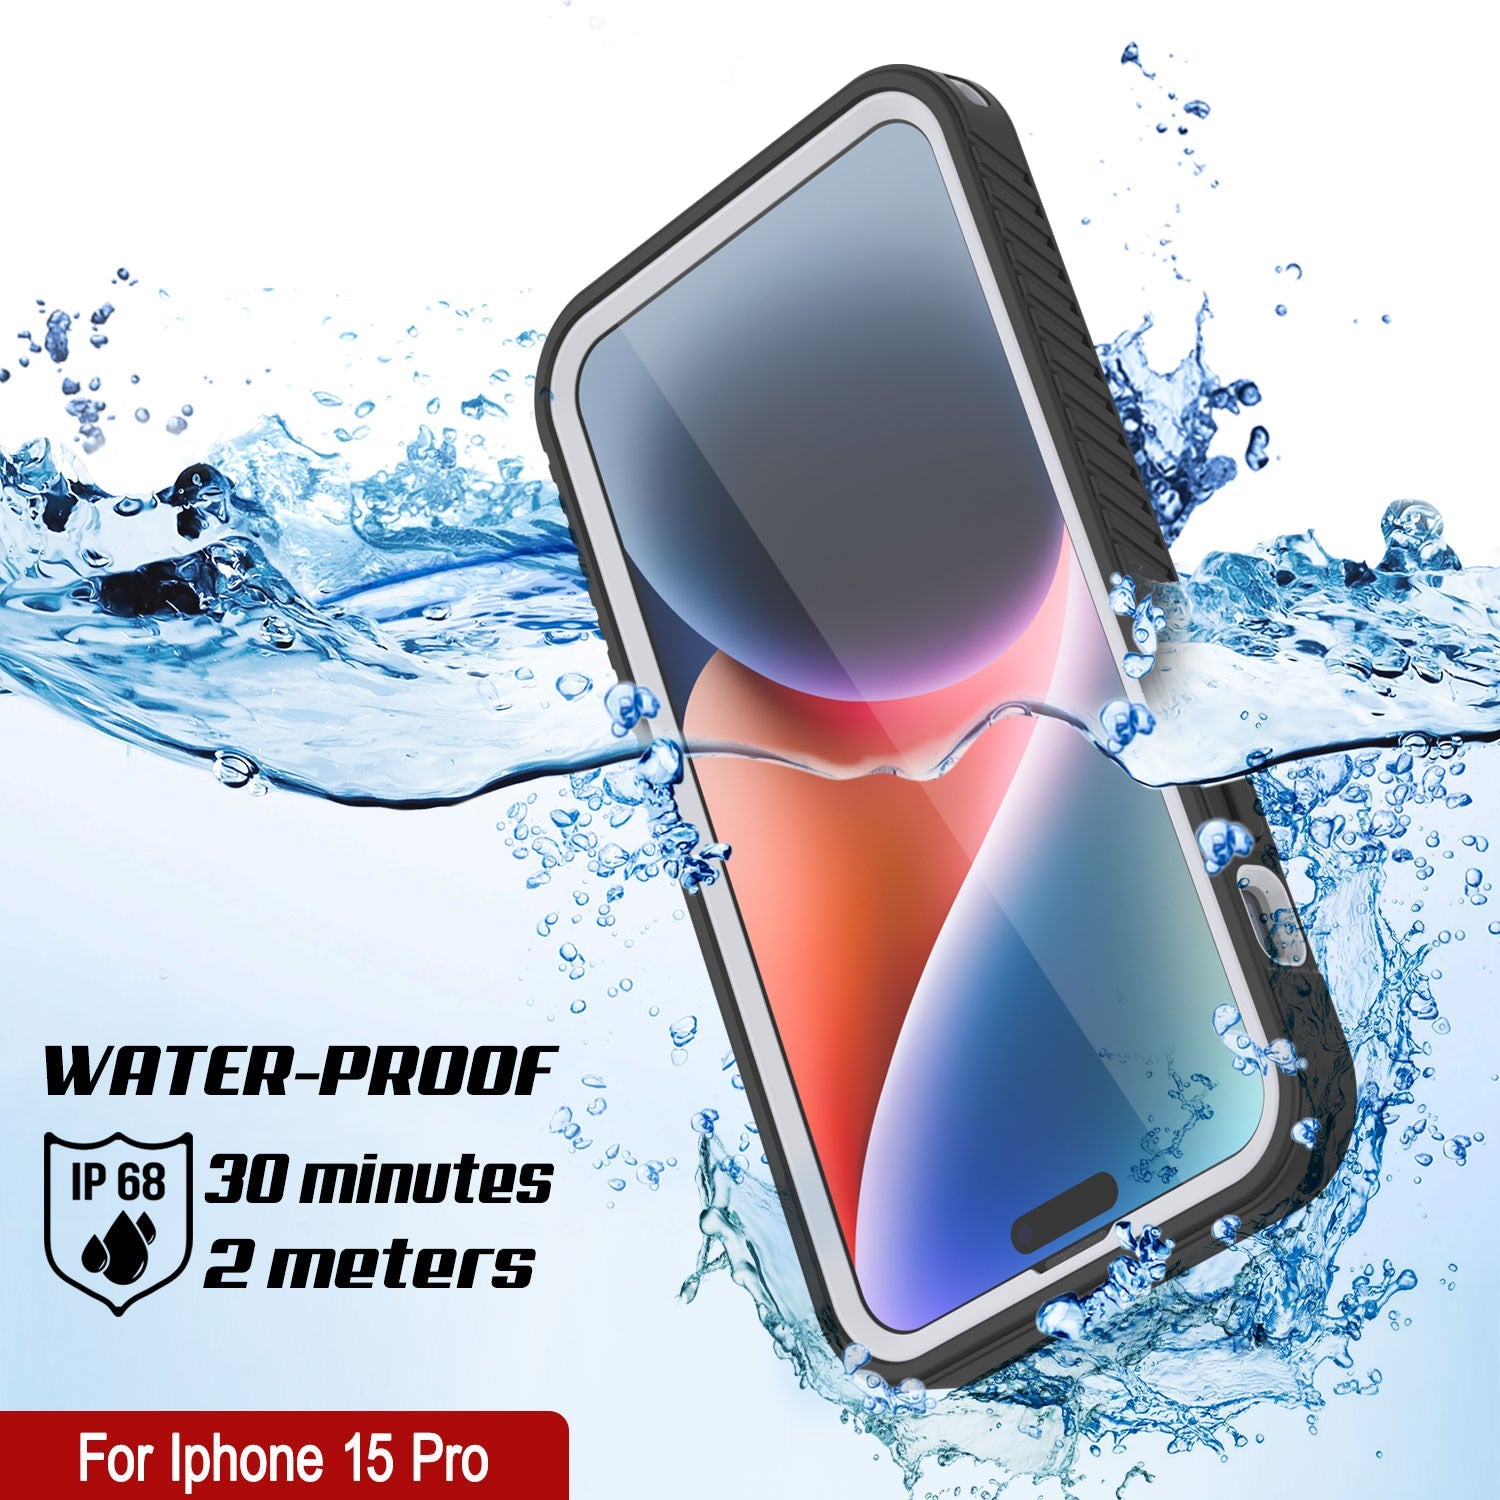 iPhone 15 Pro Waterproof IP68 Case, Punkcase [White] [StudStar Series] [Slim Fit] [Dirtproof]